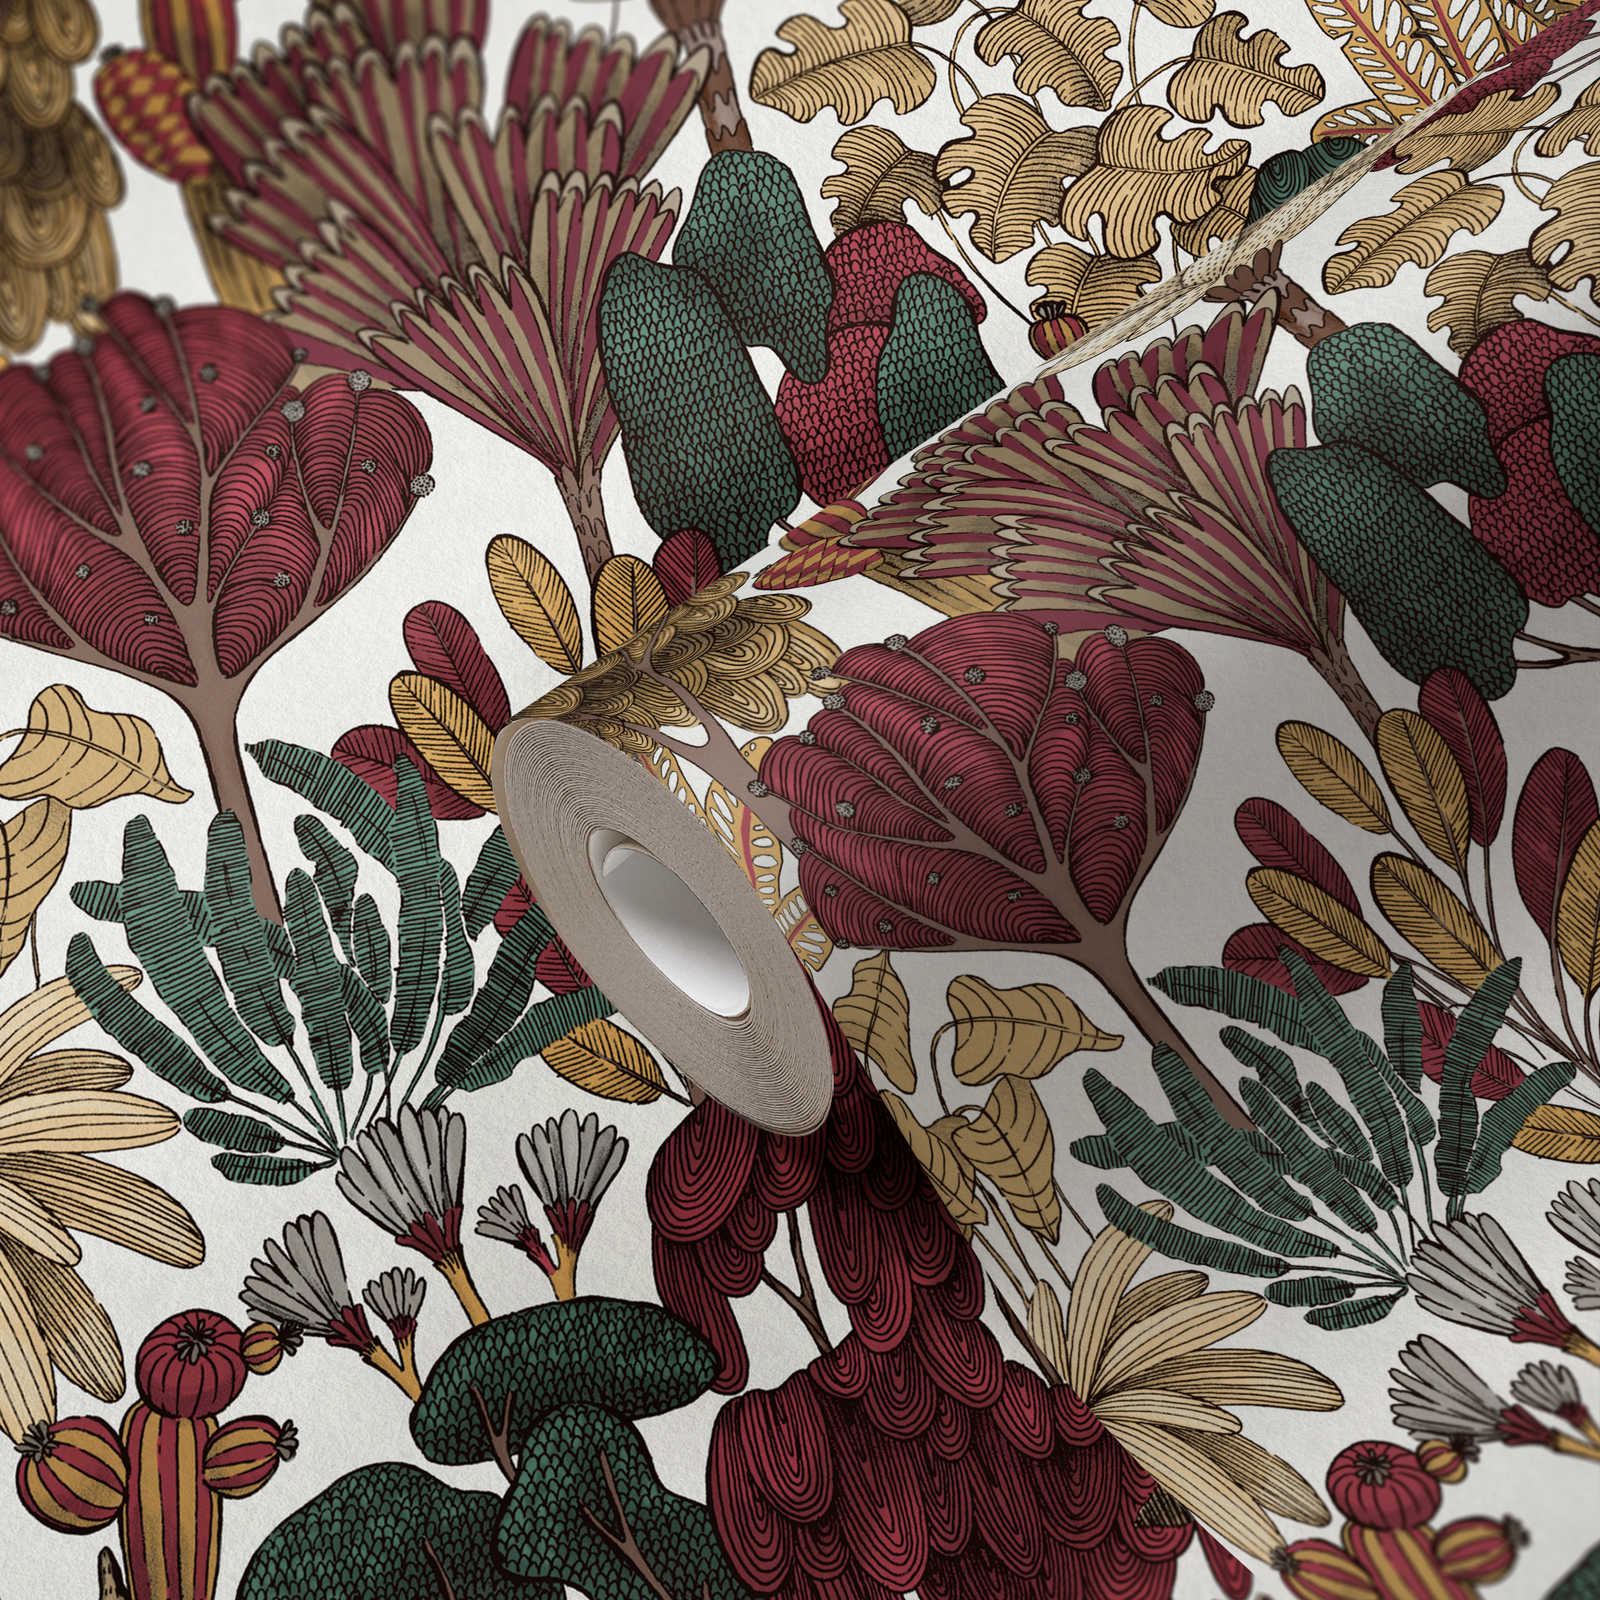             Modern behang bloemen met bomen in tekenstijl - rood, beige, bruin
        